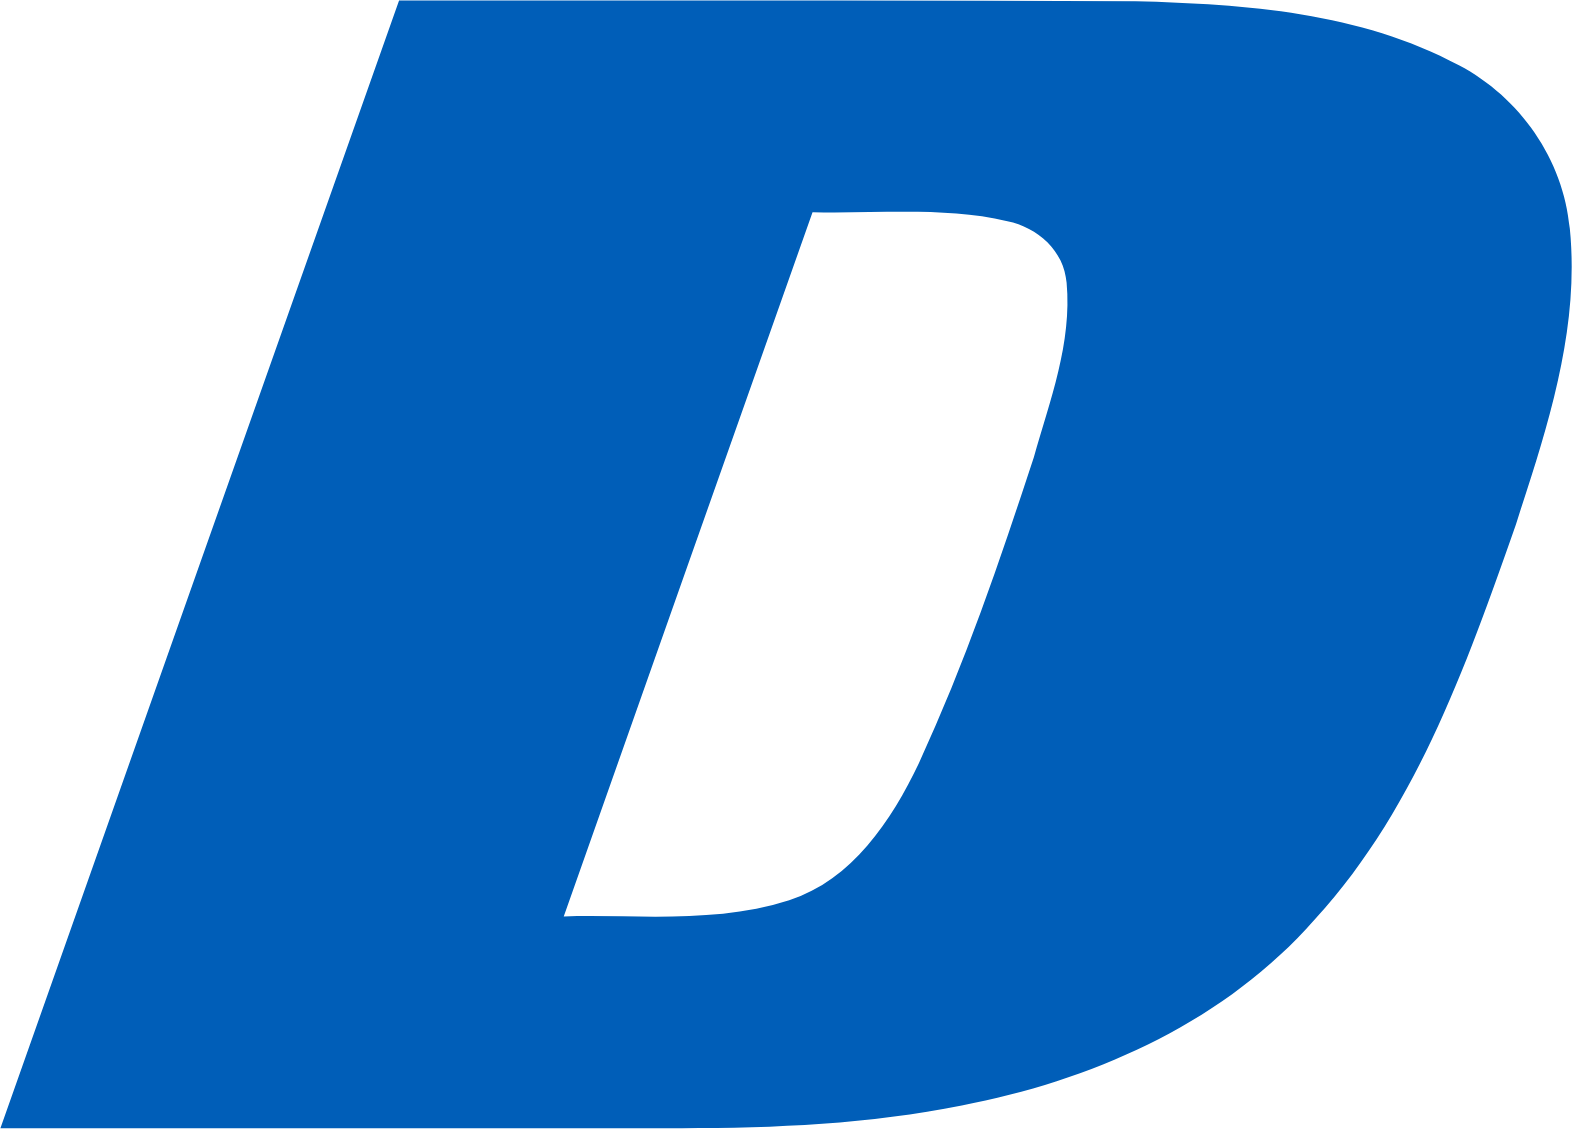 Doosan Bobcat logo (transparent PNG)